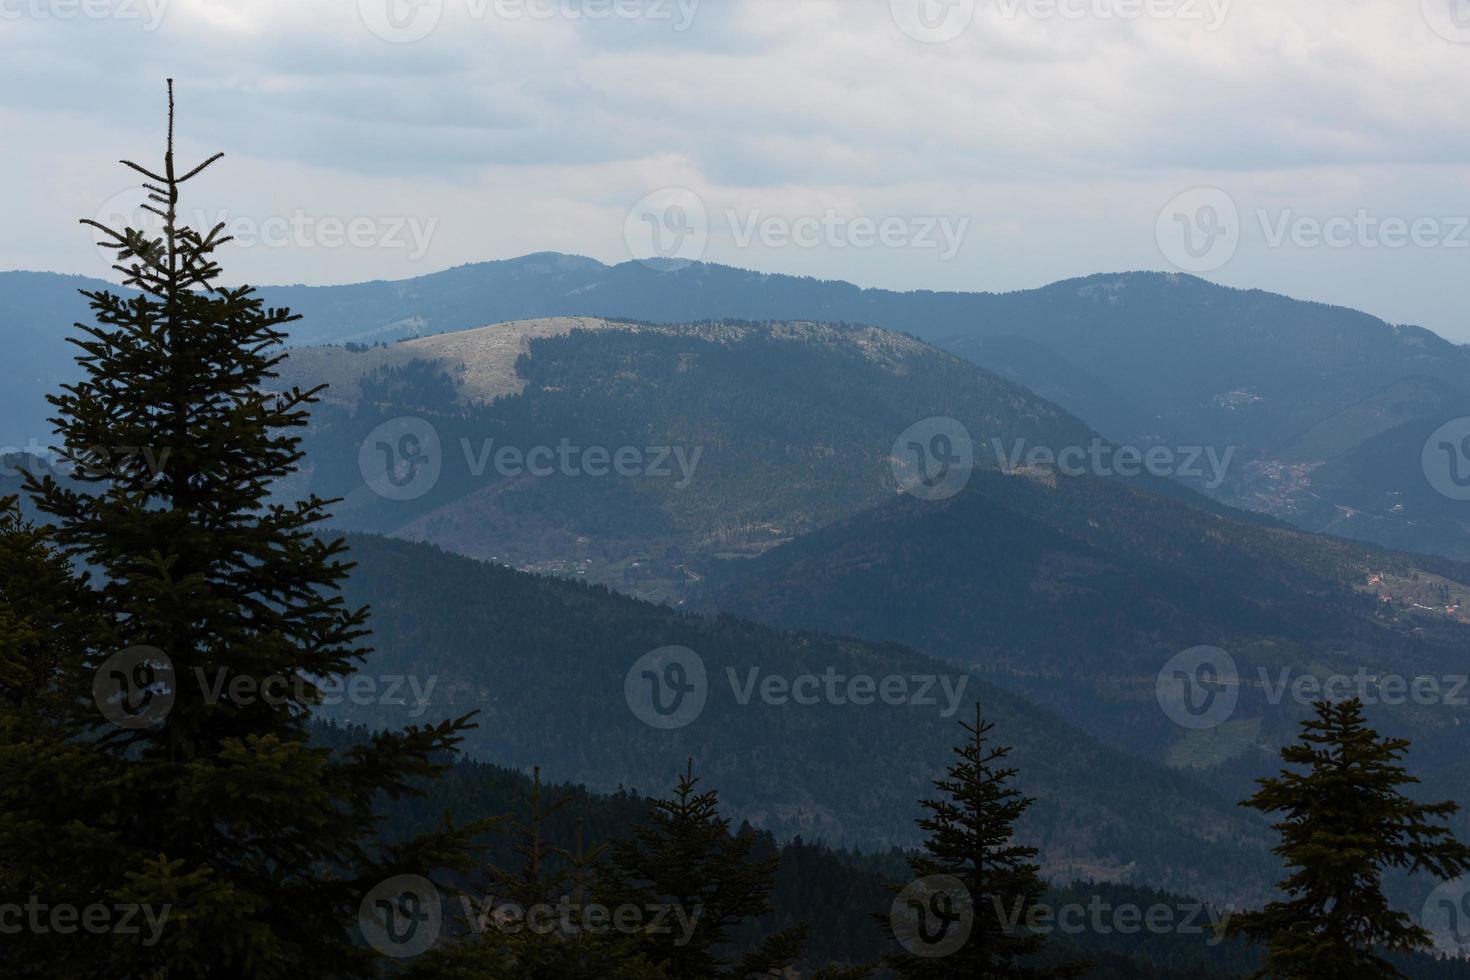 paysages printaniers des montagnes grecques photo